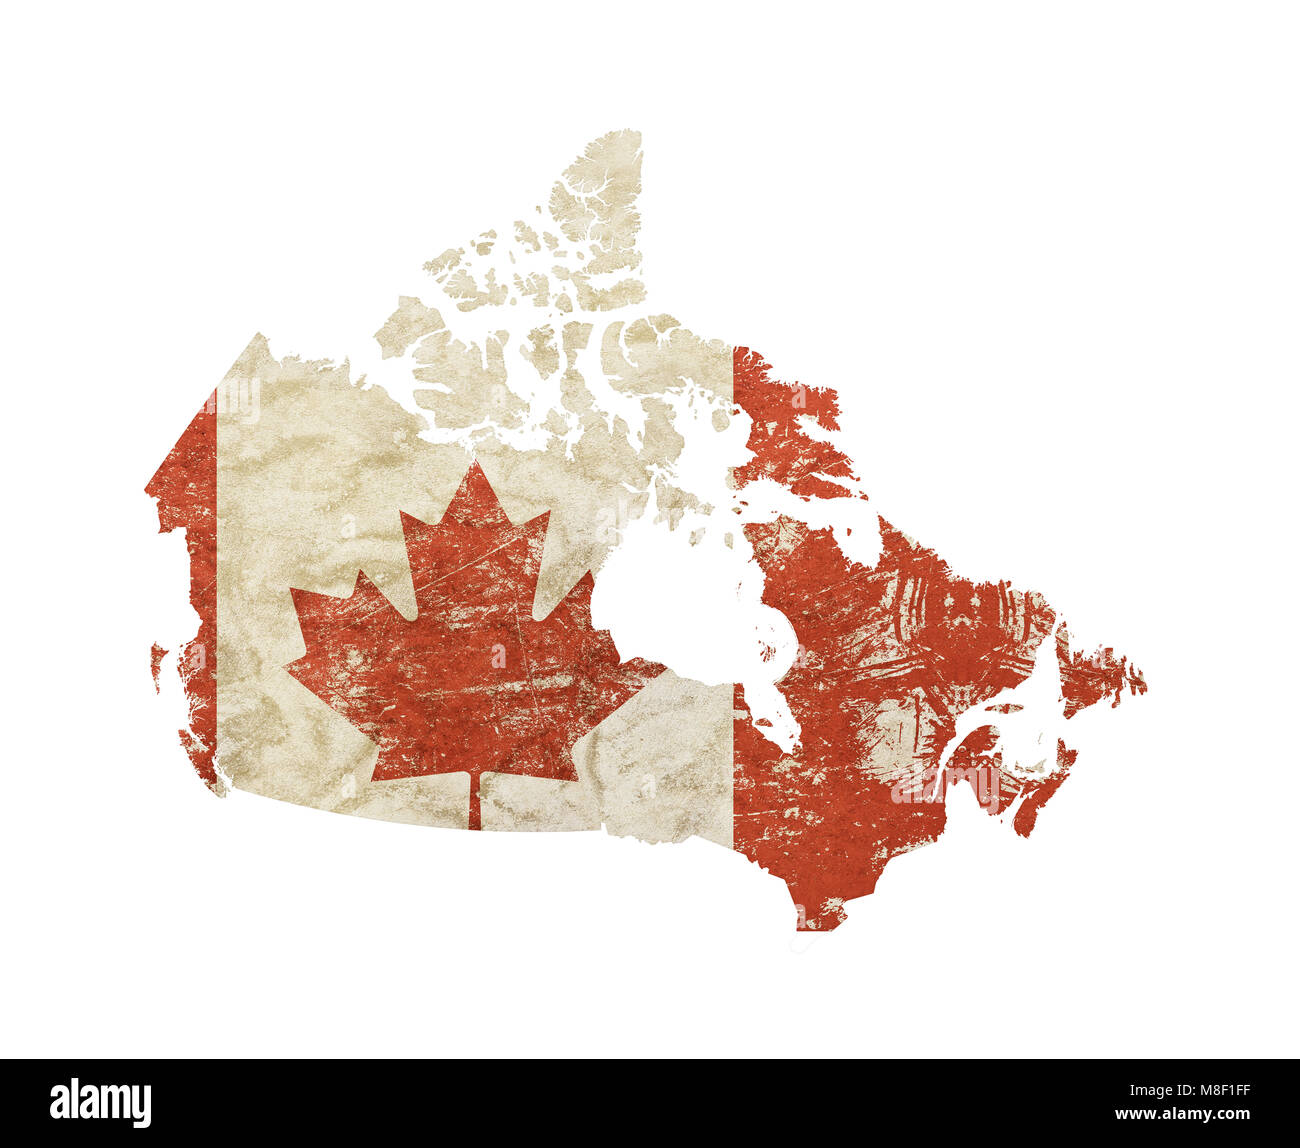 En forme de cartes du Canada old grunge vintage décolorée sale minable drapeau Canadien en détresse avec feuille d'érable rouge isolé sur fond blanc Banque D'Images